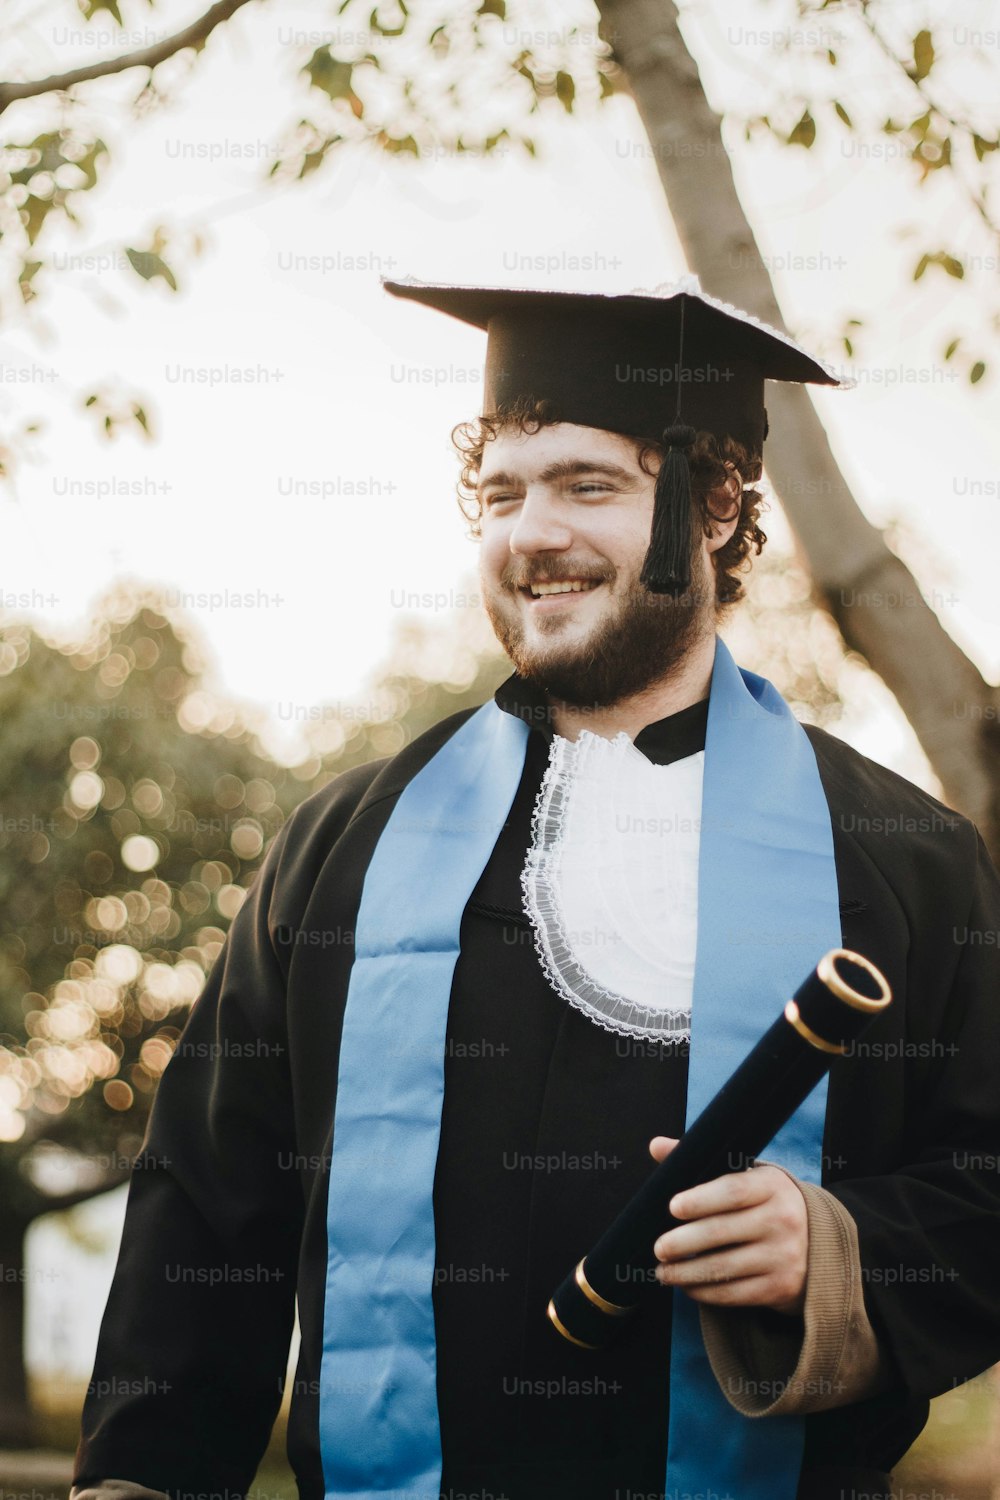 Ein Mann mit Mütze und Gewand, der ein Diplom in der Hand hält